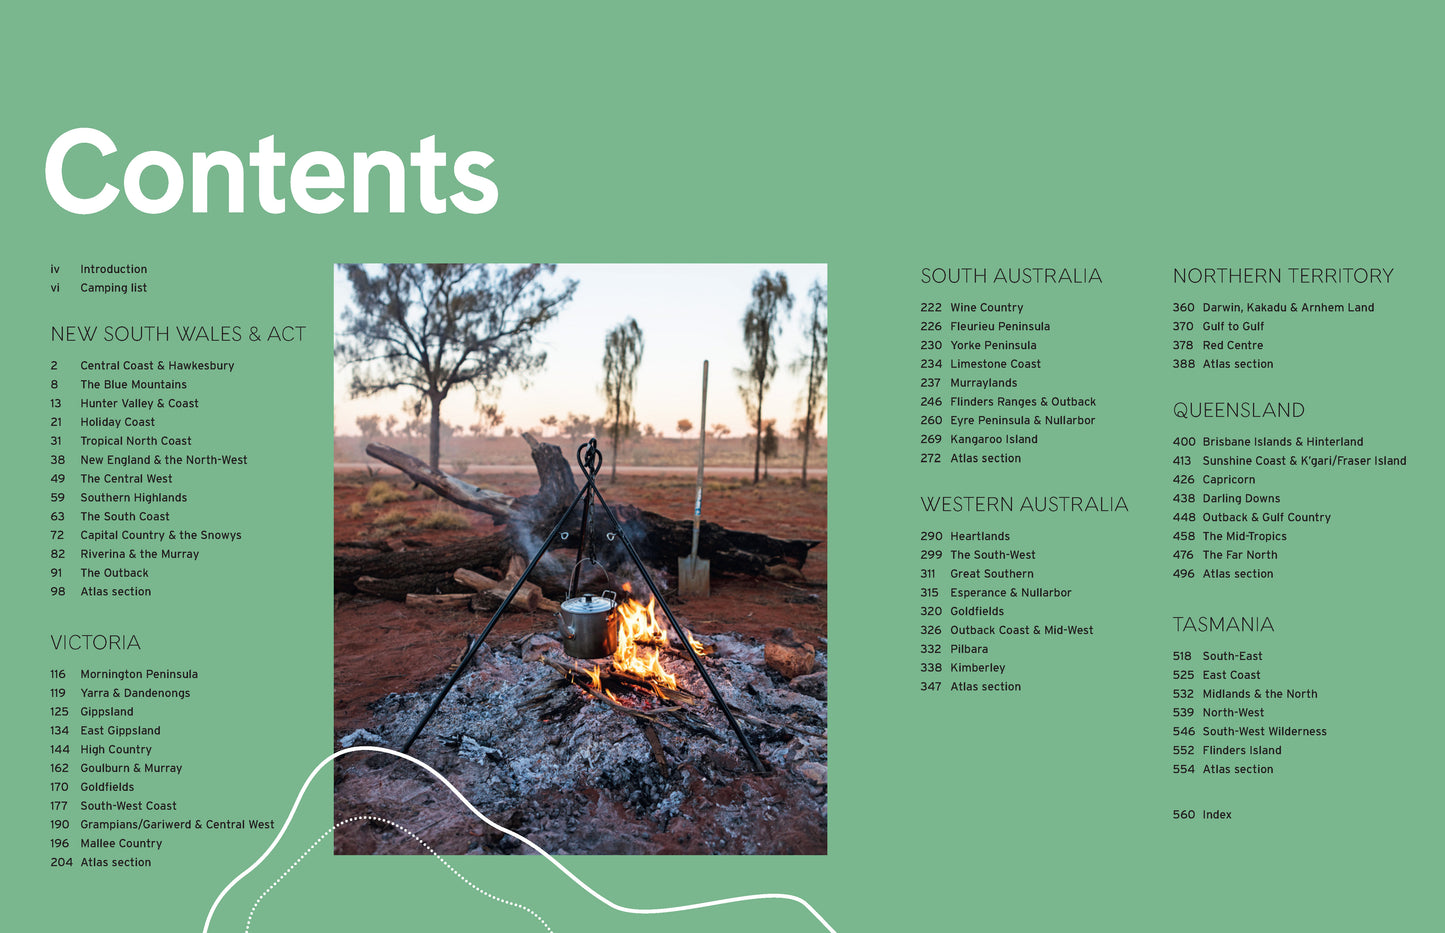 BOOKS & CO - Camping Around Australia Book- 4th Edition